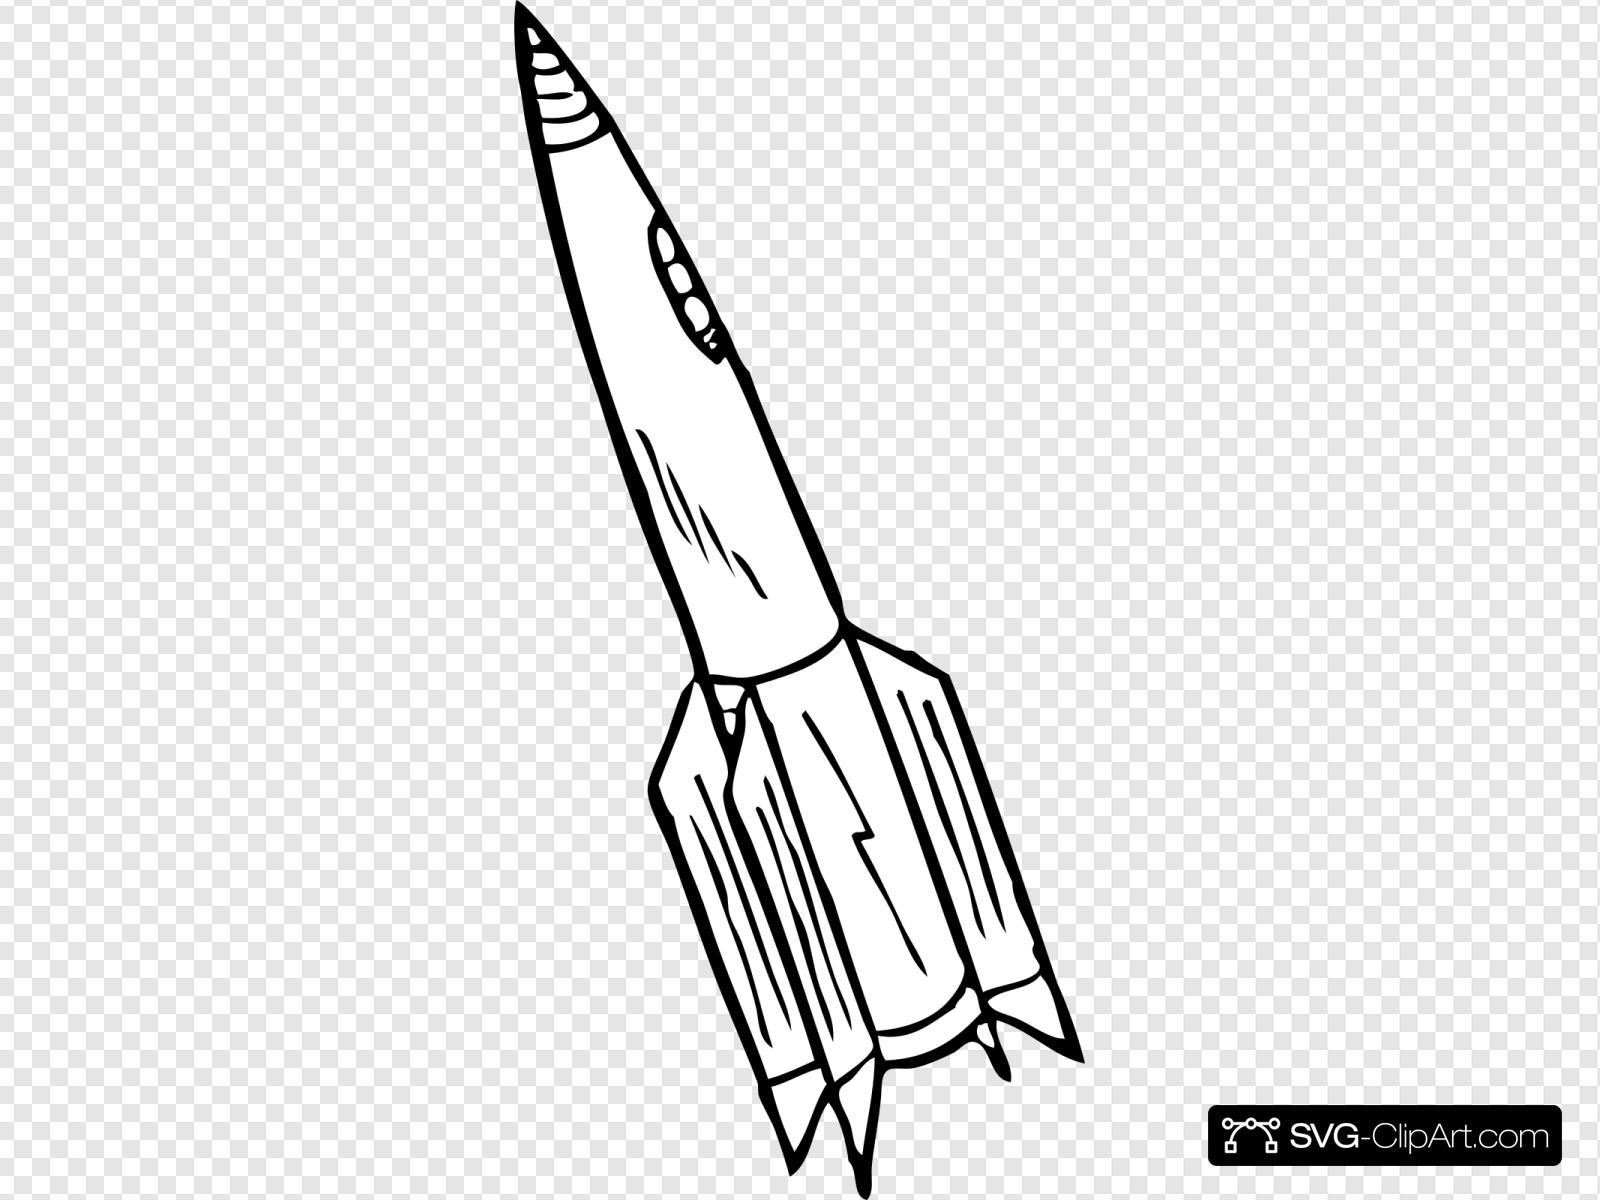 Ракета срисовать. Ракета рисунок. Ракета раскраска. Ракета рисунок для детей. Космическая ракета раскраска.